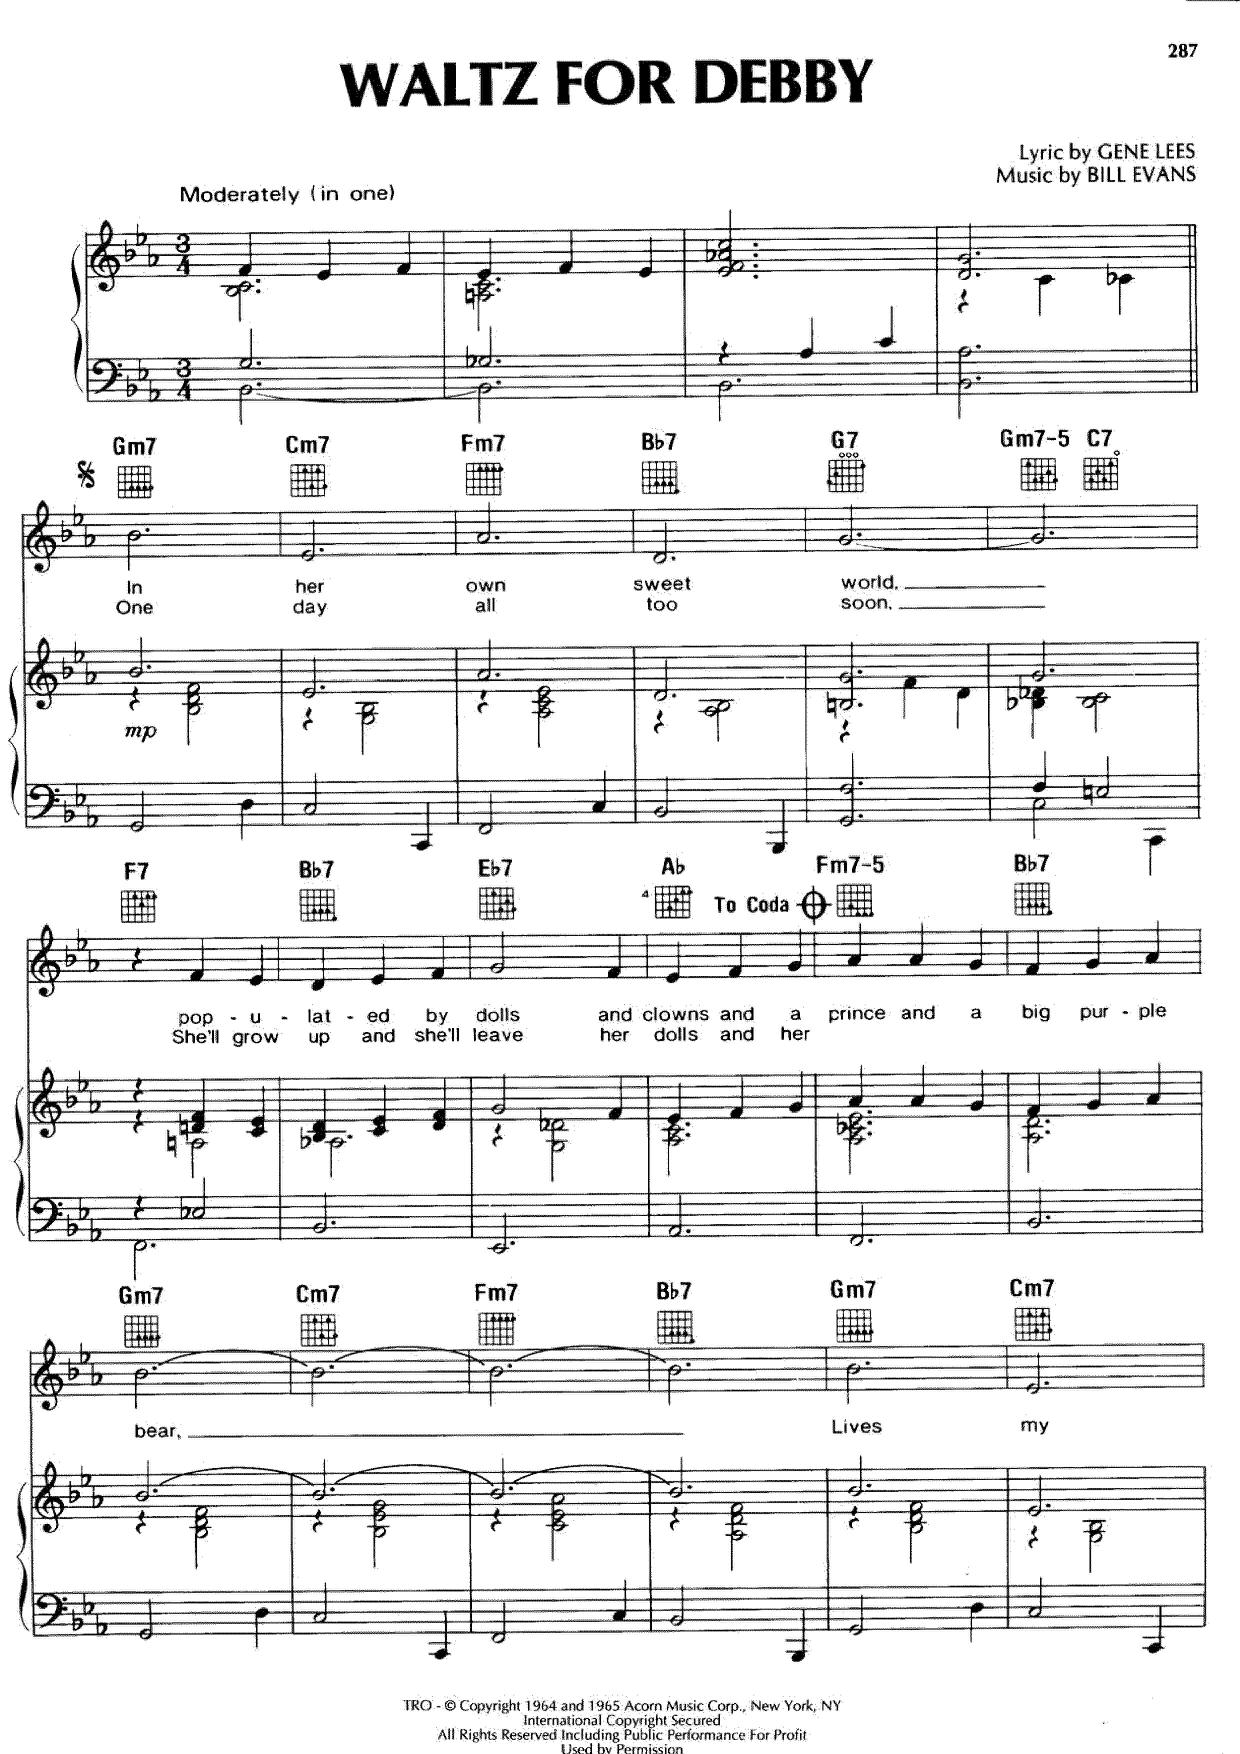 Waltz For Debby Score